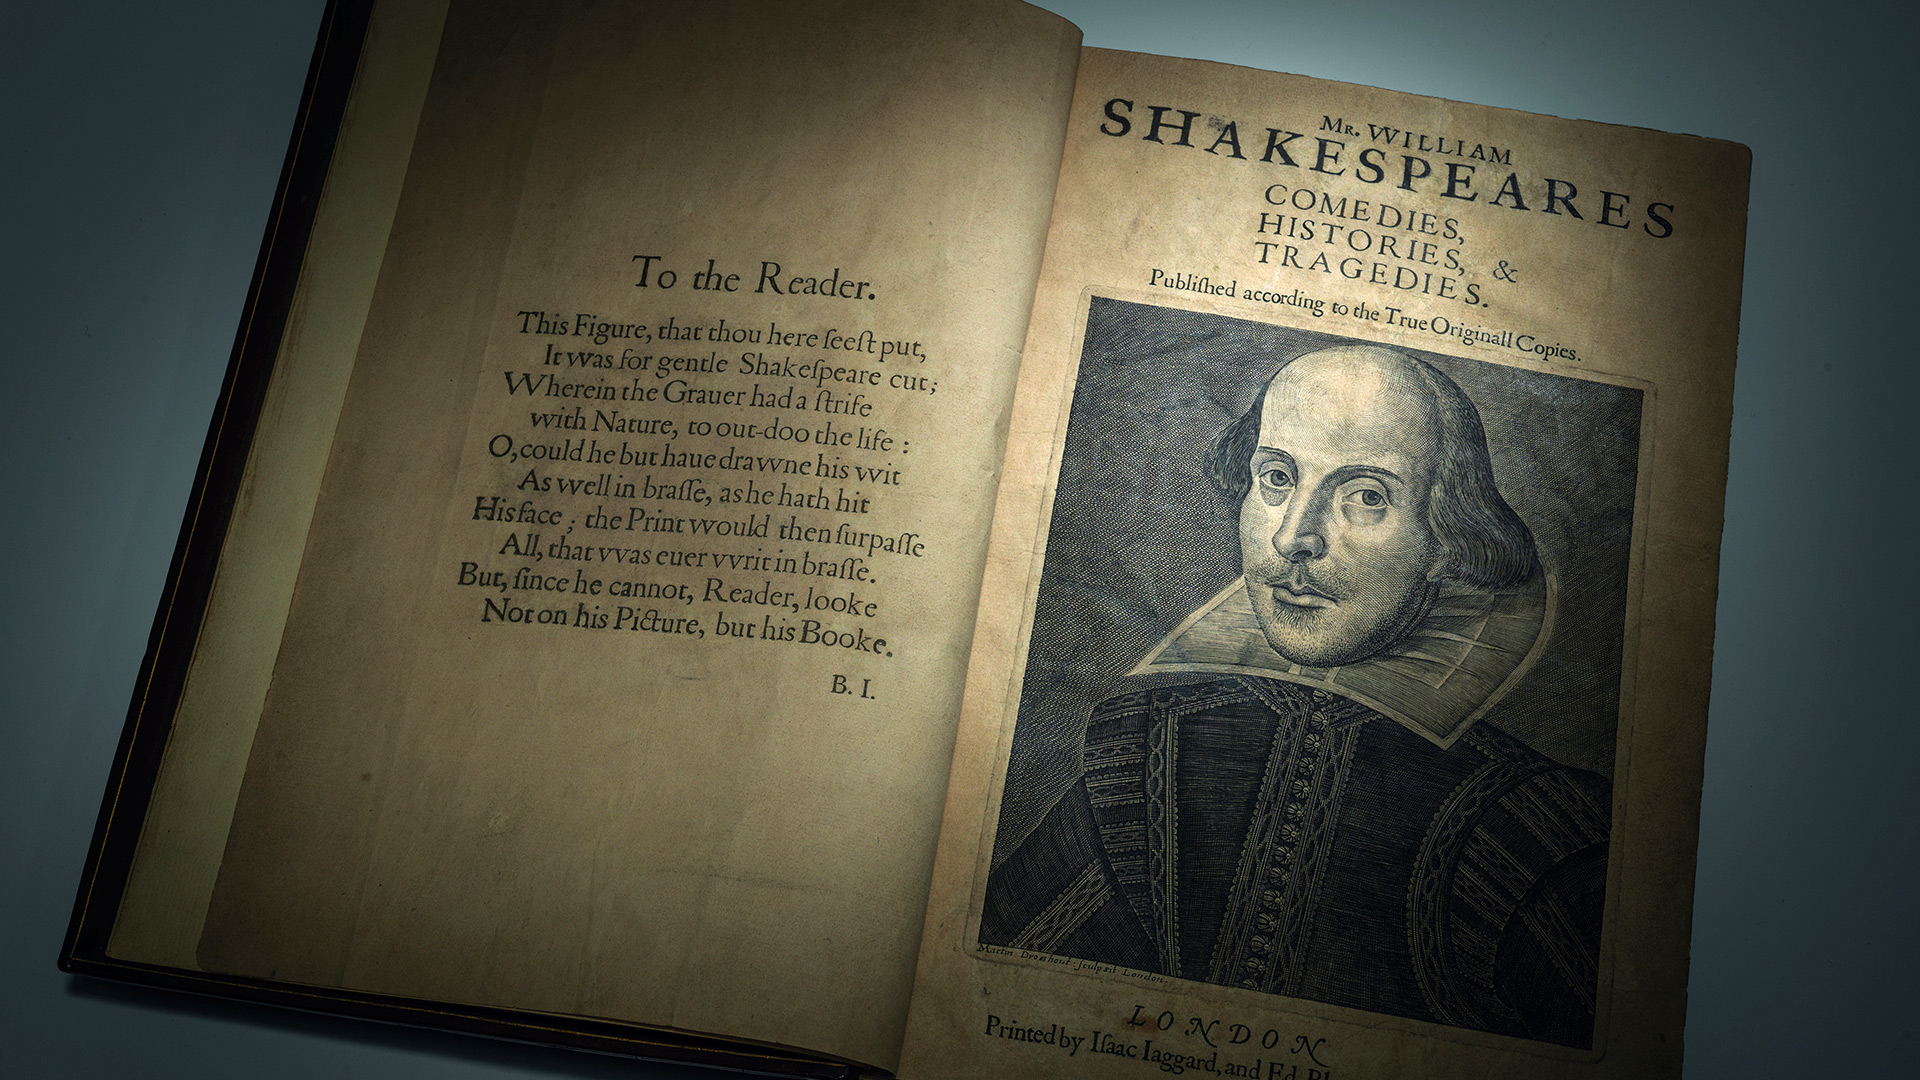 La primera cita de Carlos como Rey, es una de William Shakespeare y no cualquier cita.